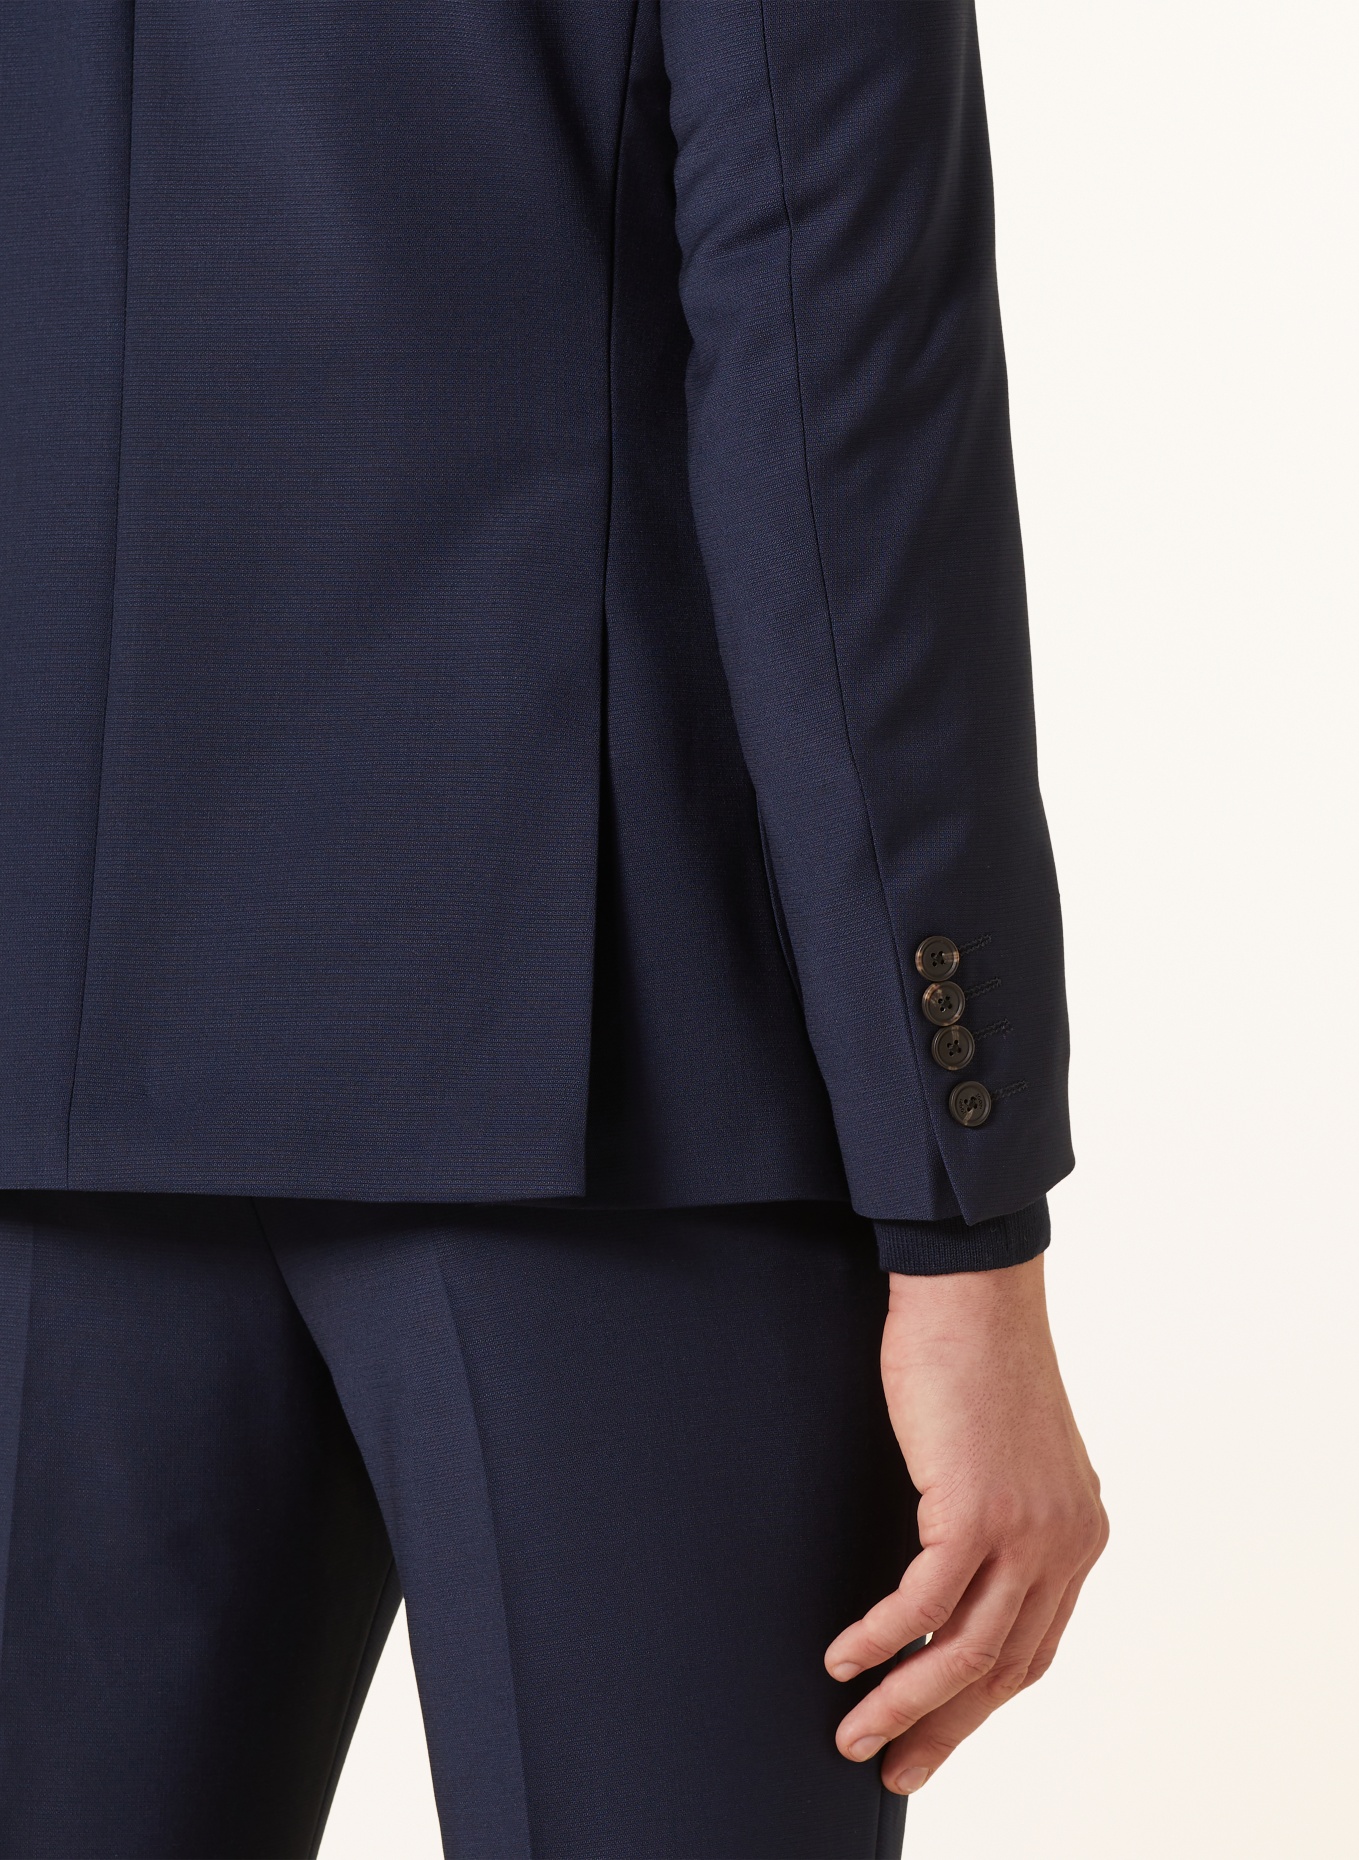 JOOP! Suit jacket HAKEEM slim fit, Color: 401 Dark Blue                  401 (Image 6)